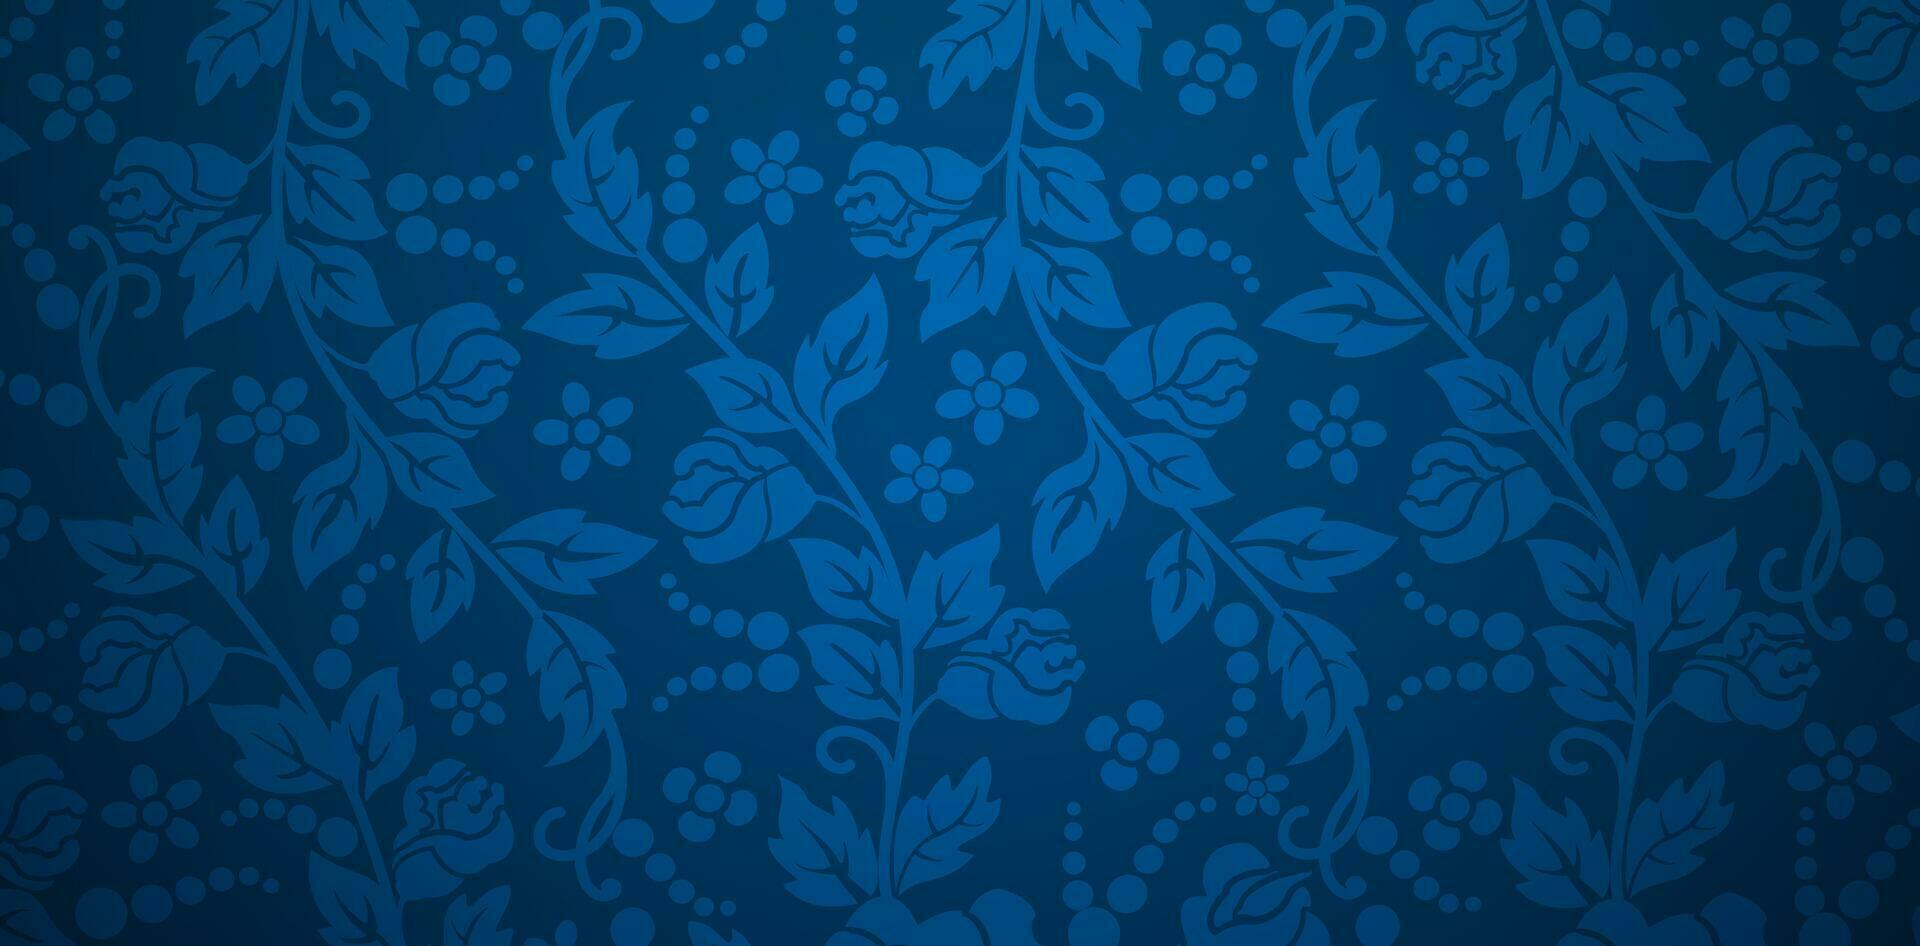 naadloos patroon met roos bloem bladeren blauw bloemen sier- achtergronden voor textiel behang, boeken dekt, digitaal interfaces, prints ontwerp Sjablonen materiaal kaarten uitnodiging, omhulsel papieren vector